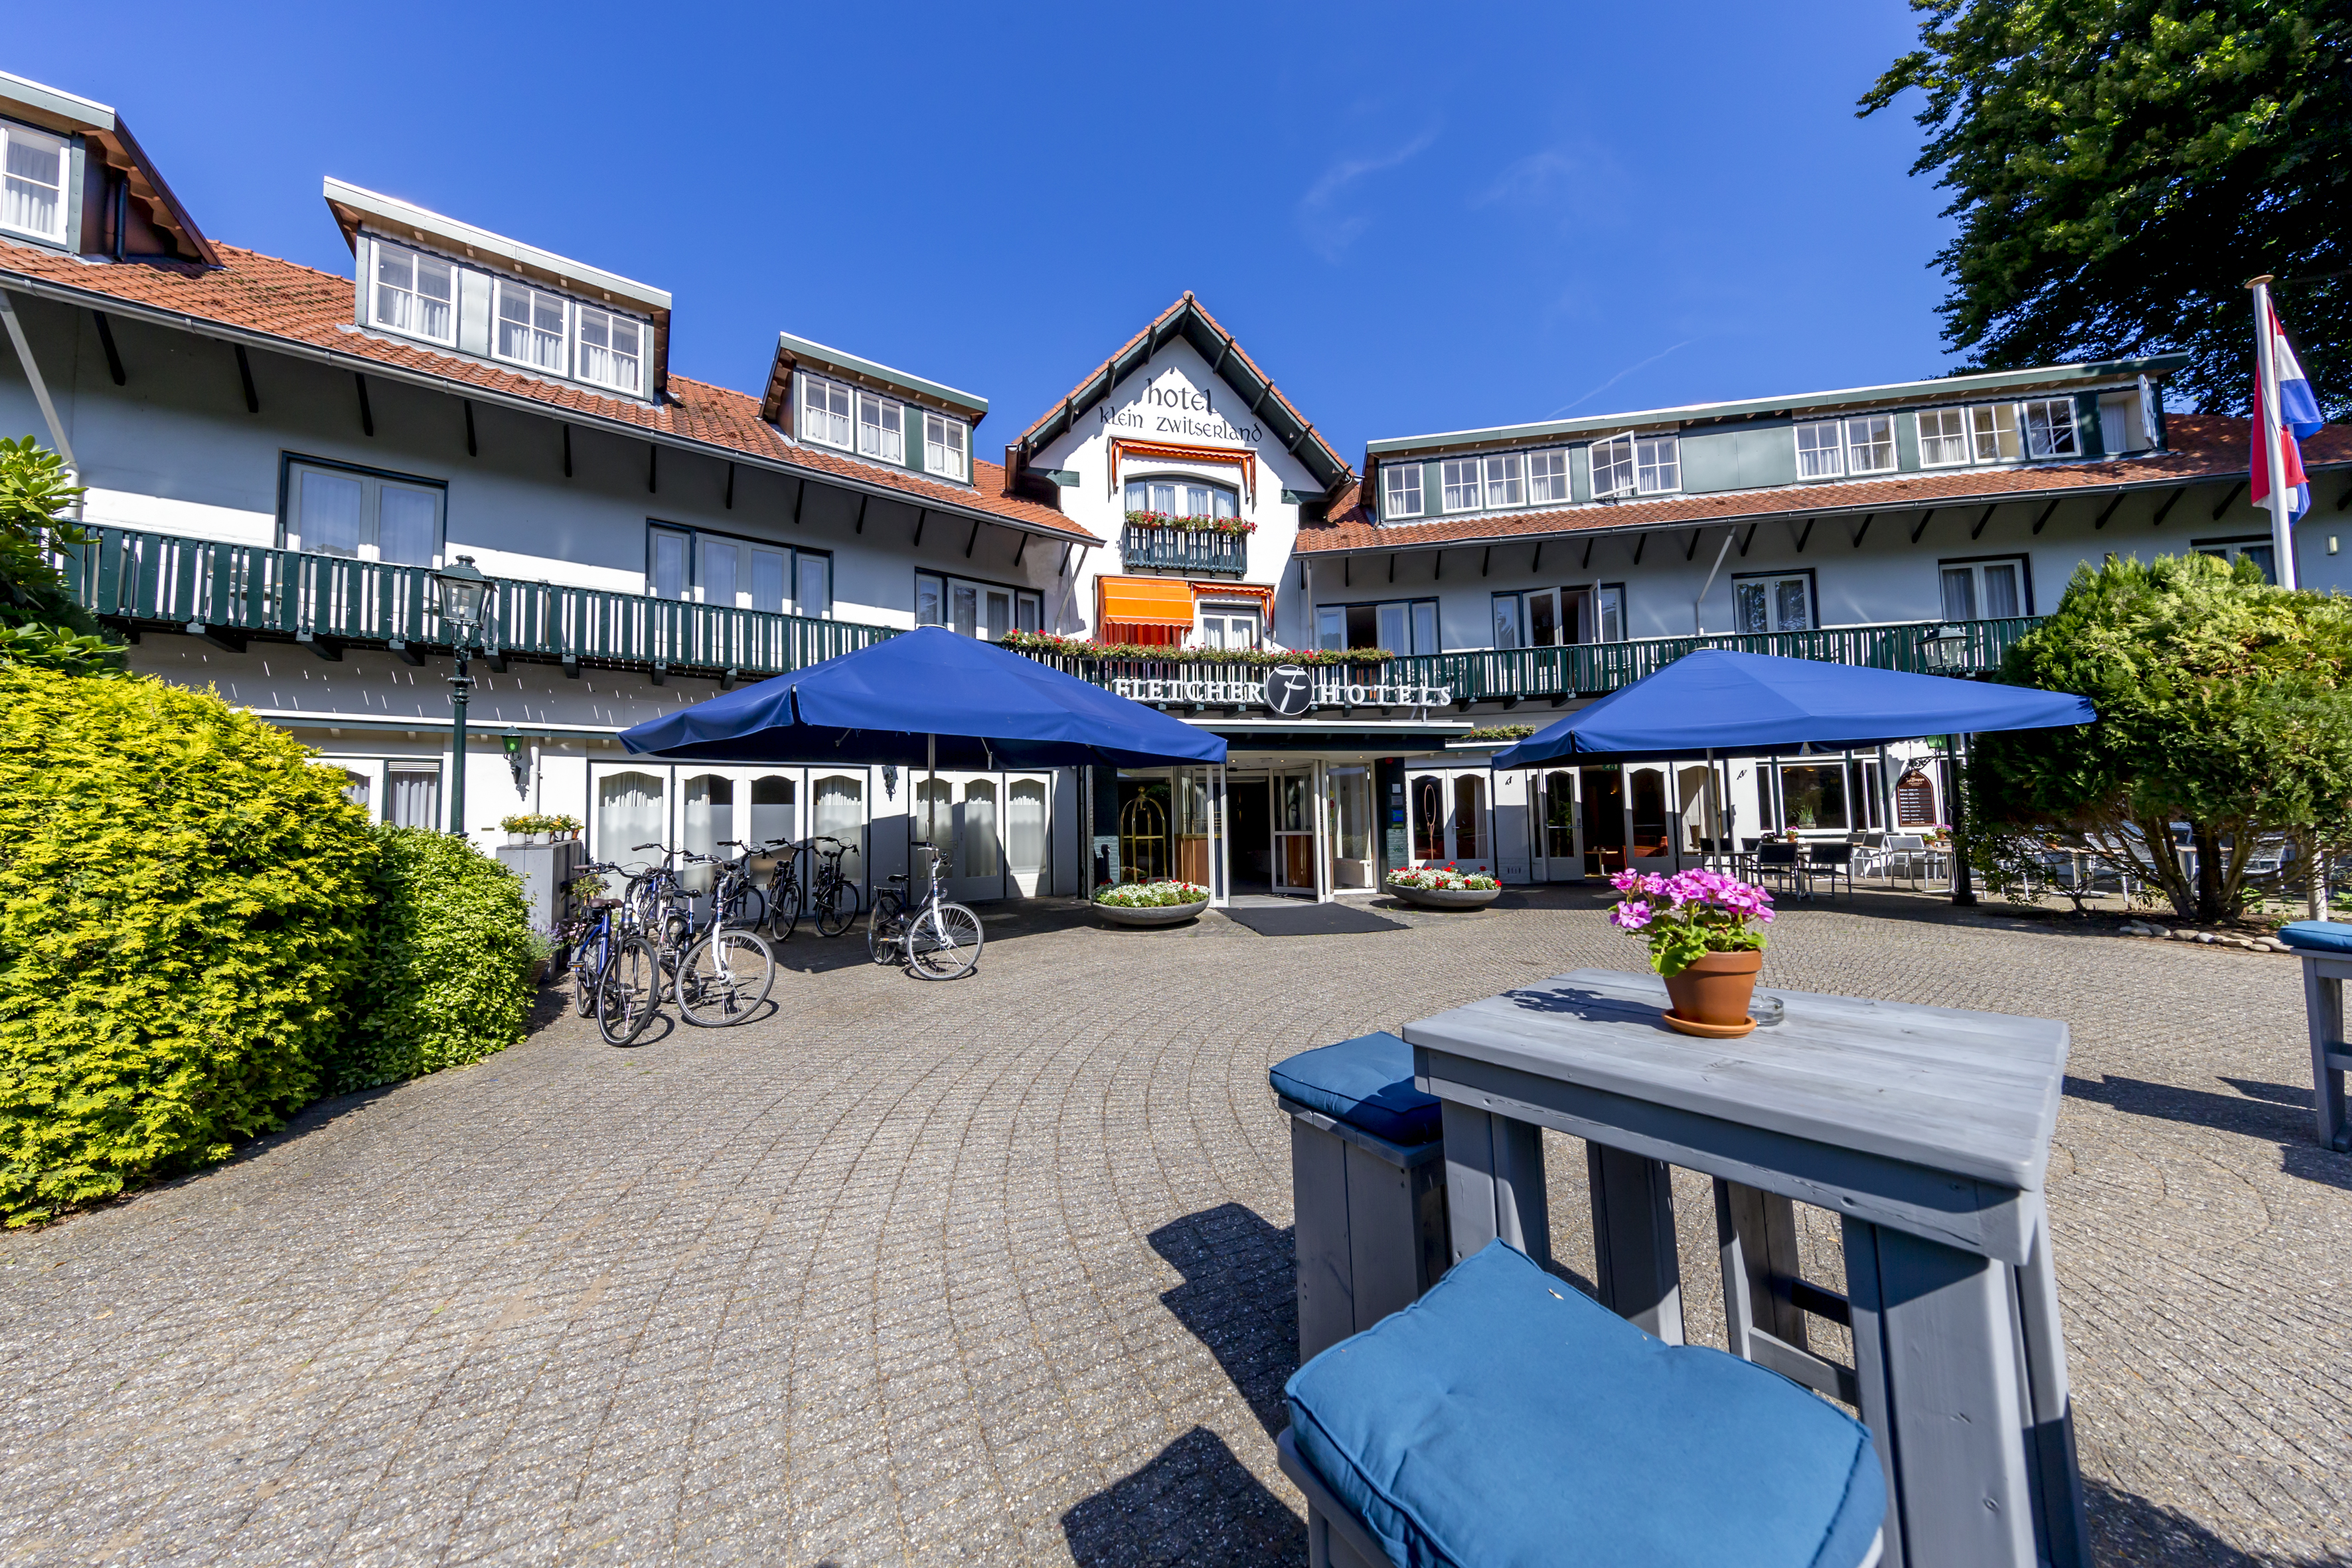 Fletcher Hotel-Restaurant Klein Zwitserland image